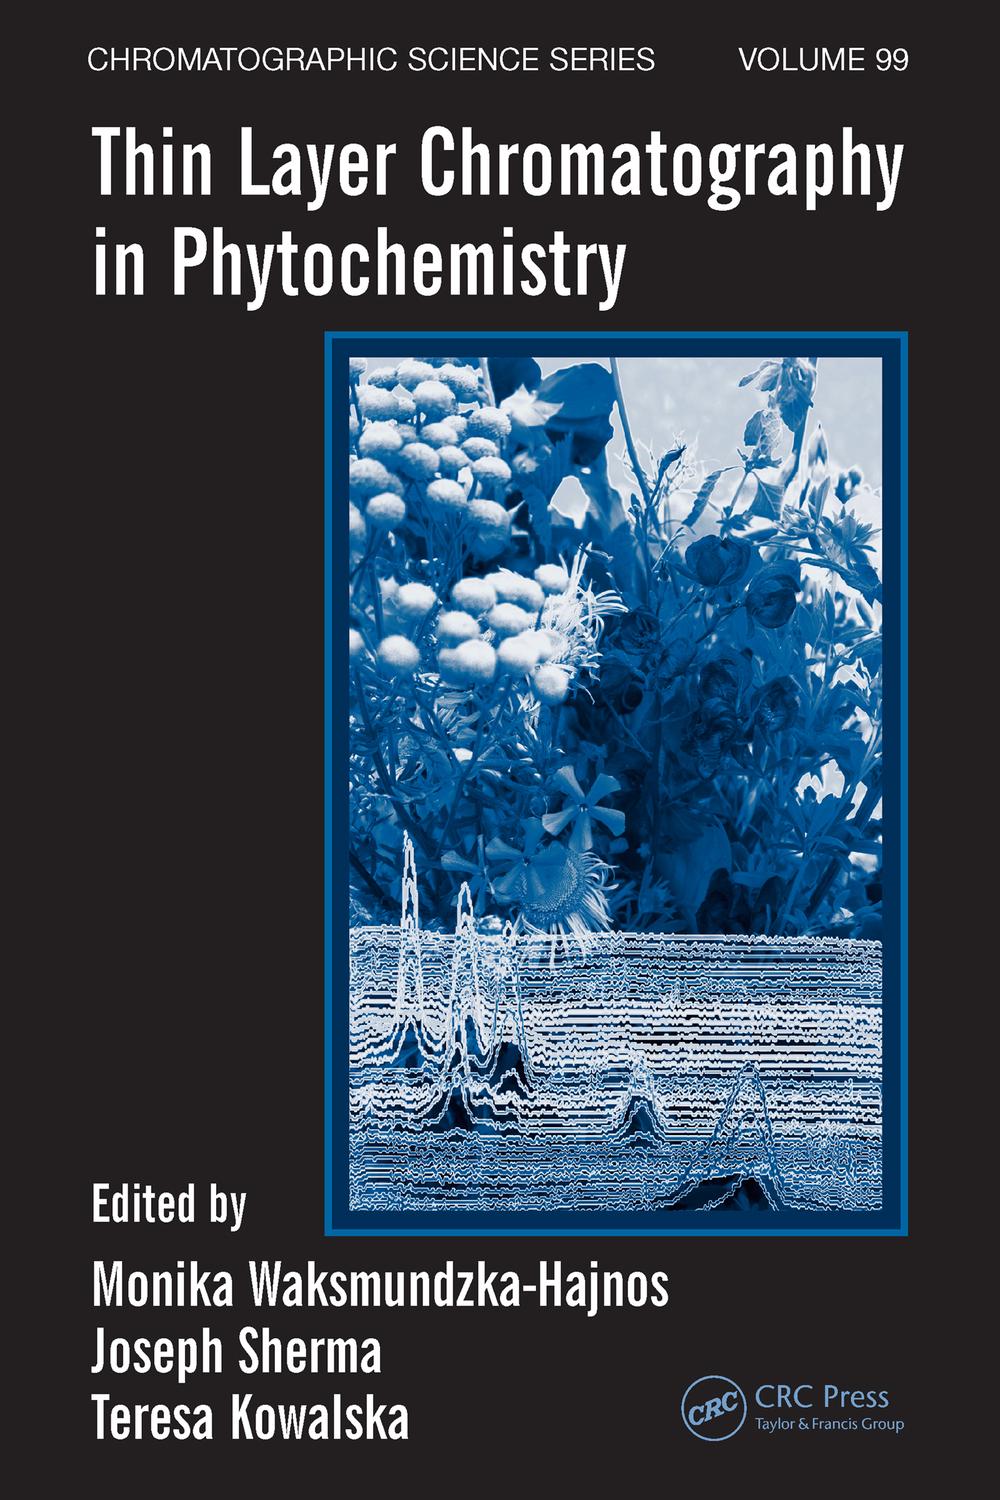 Thin Layer Chromatography in Phytochemistry - Monika Waksmundzka-Hajnos, Joseph Sherma, Teresa Kowalska